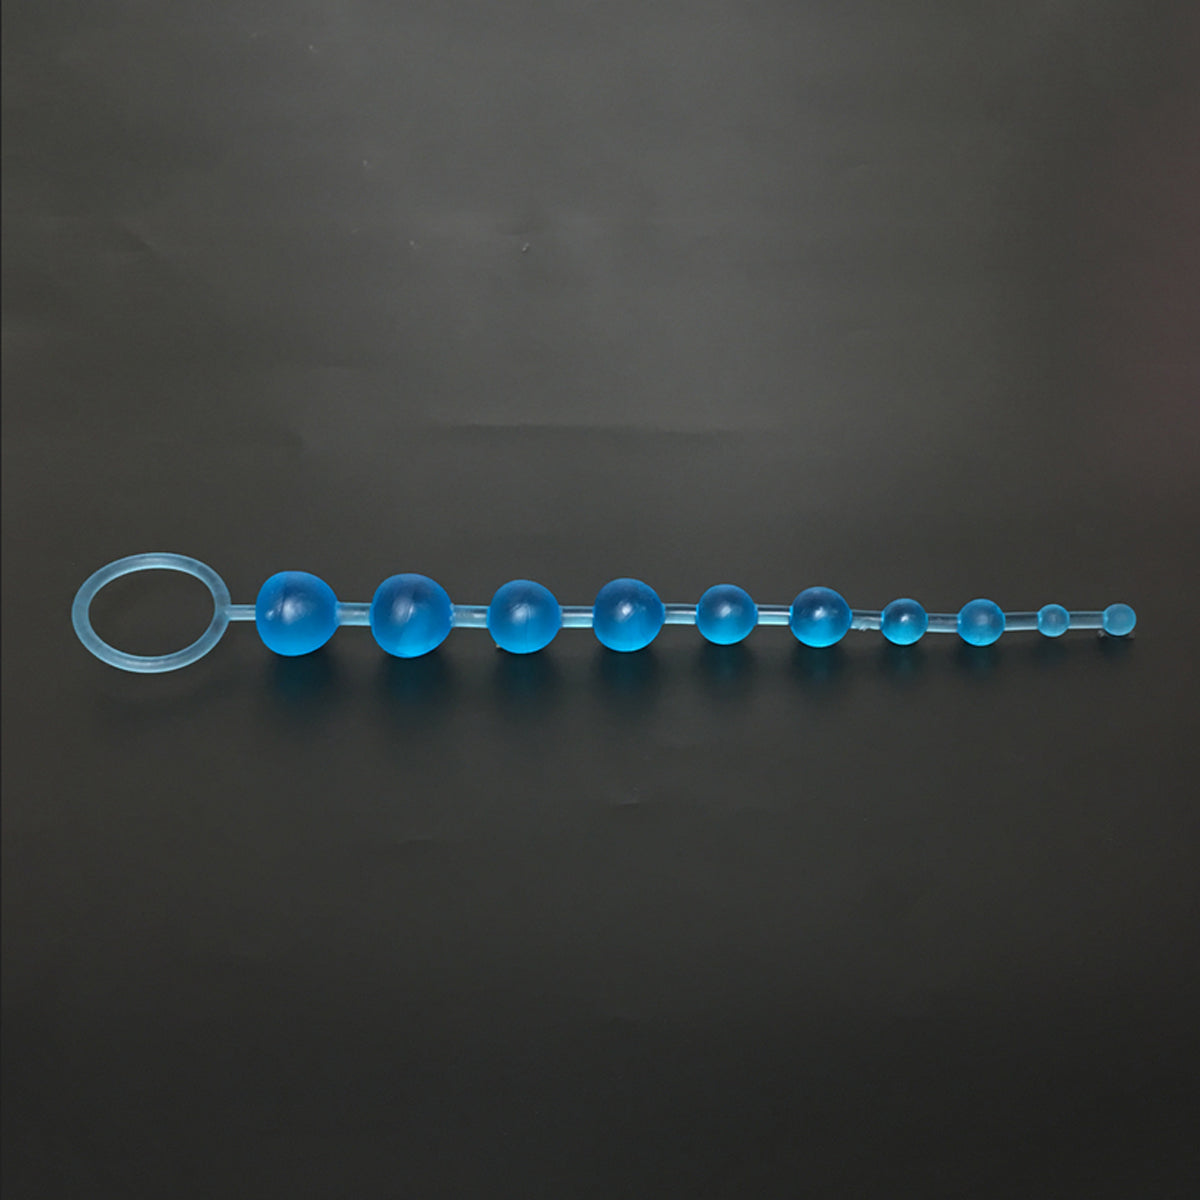 TPFSecret Perlen Analkette für Männer und Frauen - 29,5cm Länge - verschiedene Farben